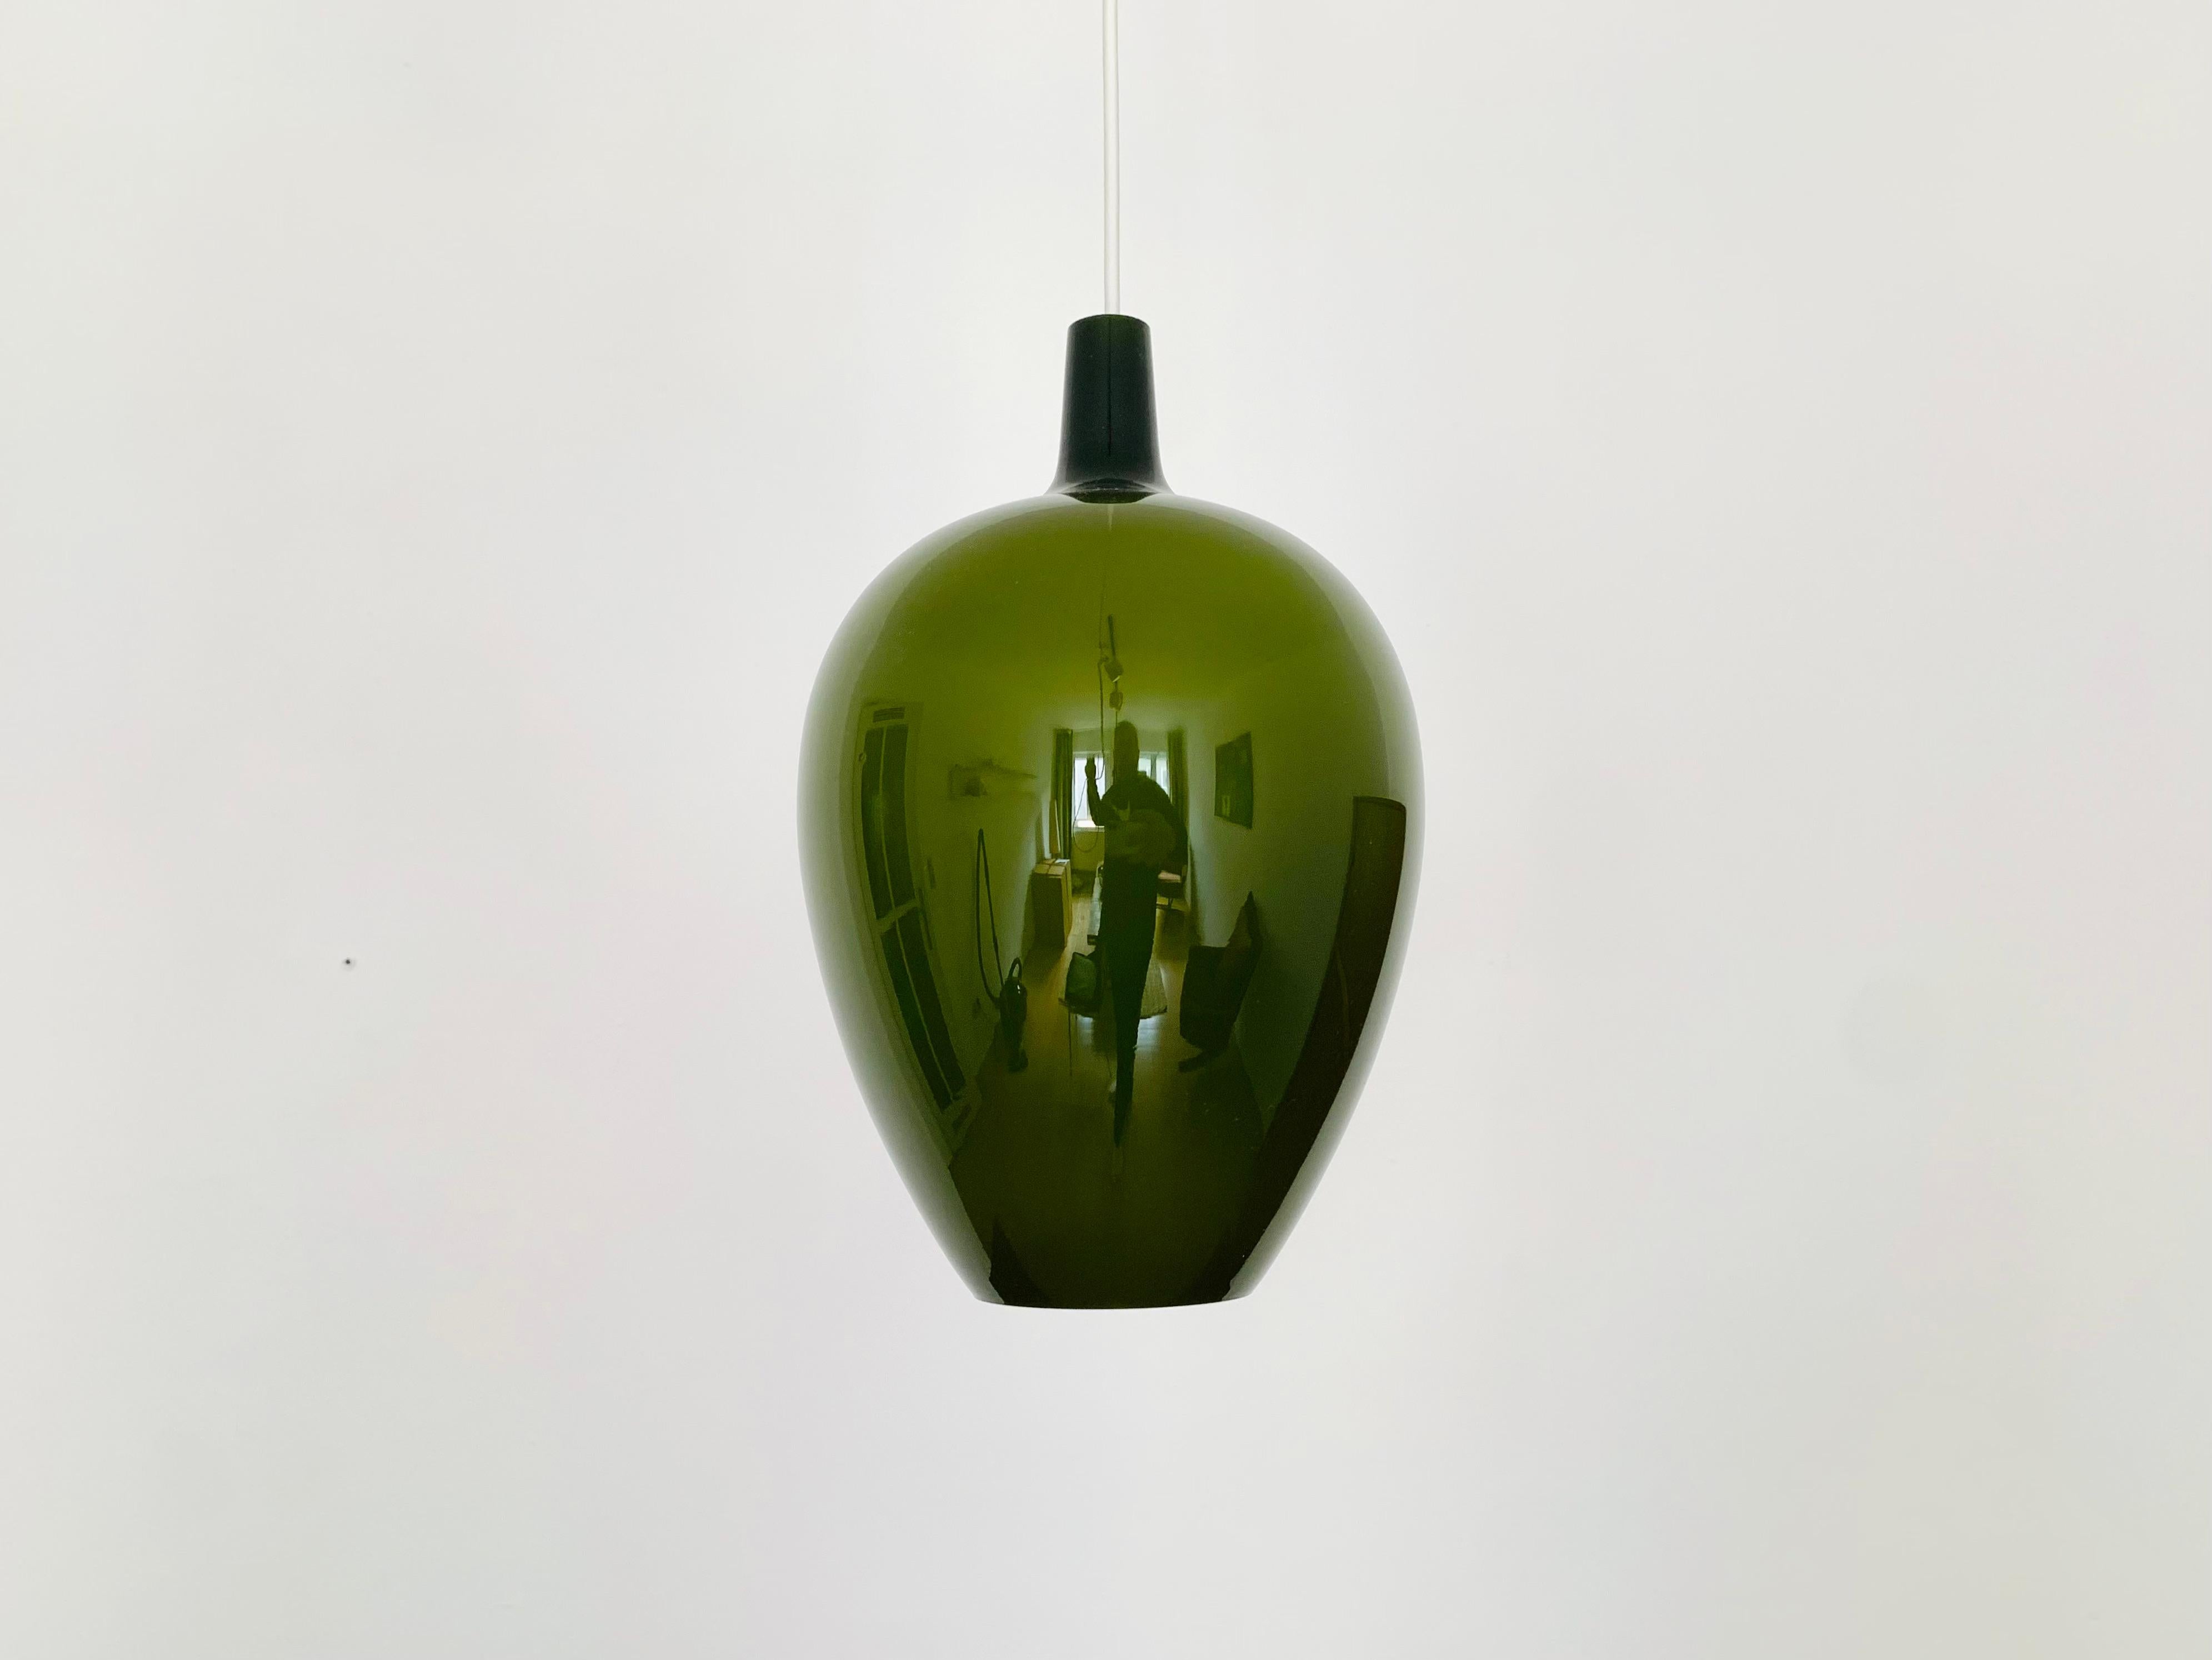 Wunderschöne dänische Glas-Pendelleuchte aus den 1960er Jahren.
Das Design macht die Lampe zu einer echten Bereicherung und zu einem absoluten Favoriten für jedes Zuhause.
Es entsteht ein angenehmes Licht.

Gestaltung: Jo Hammerborg
Hersteller: Fog